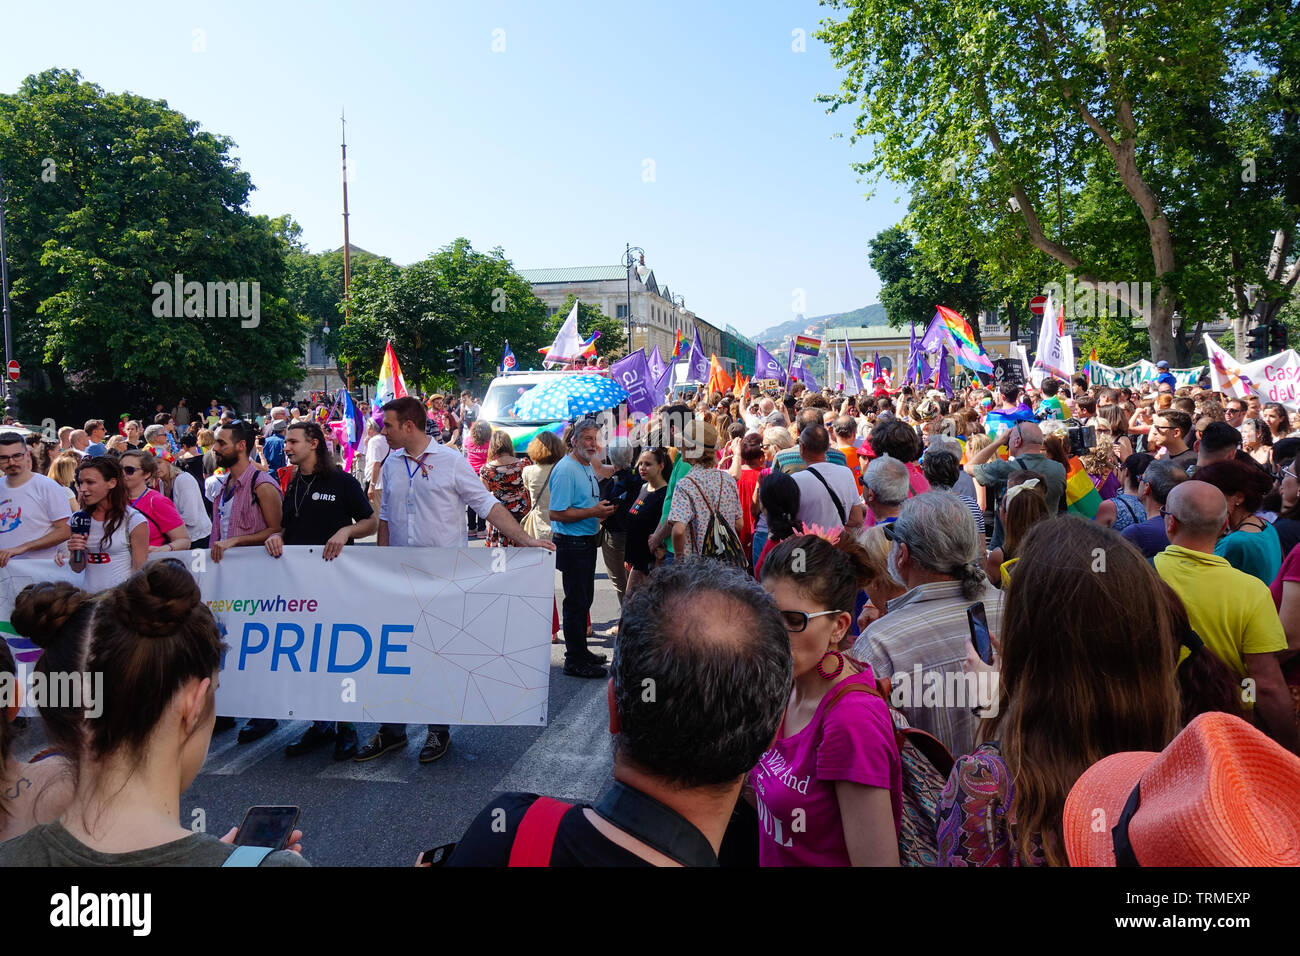 Trieste Italia - 8 giugno 2019 GAY PRIDE PARADE FVG LGBT marzo nella promozione della parità di trattamento e la tolleranza in una città costiera di Trieste Foto Stock